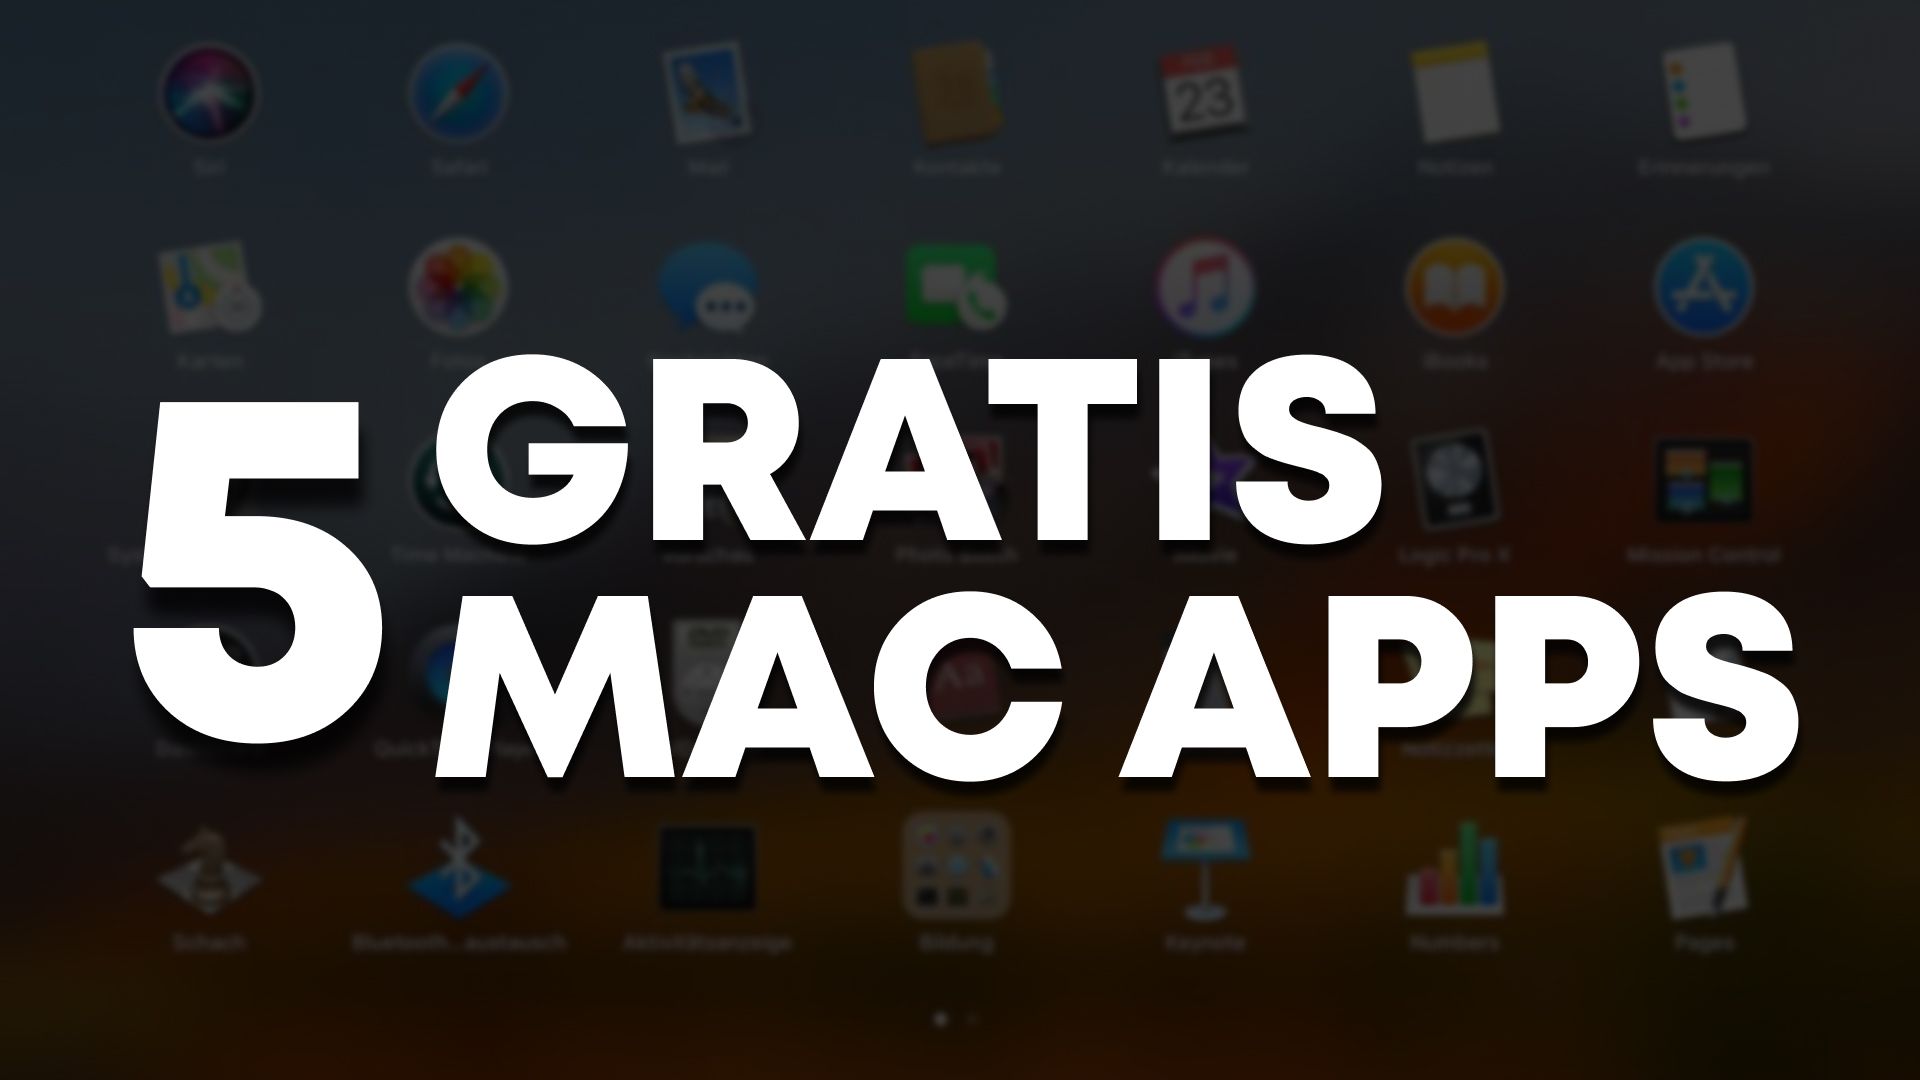 Die 5 besten Gratis-Apps für Mac